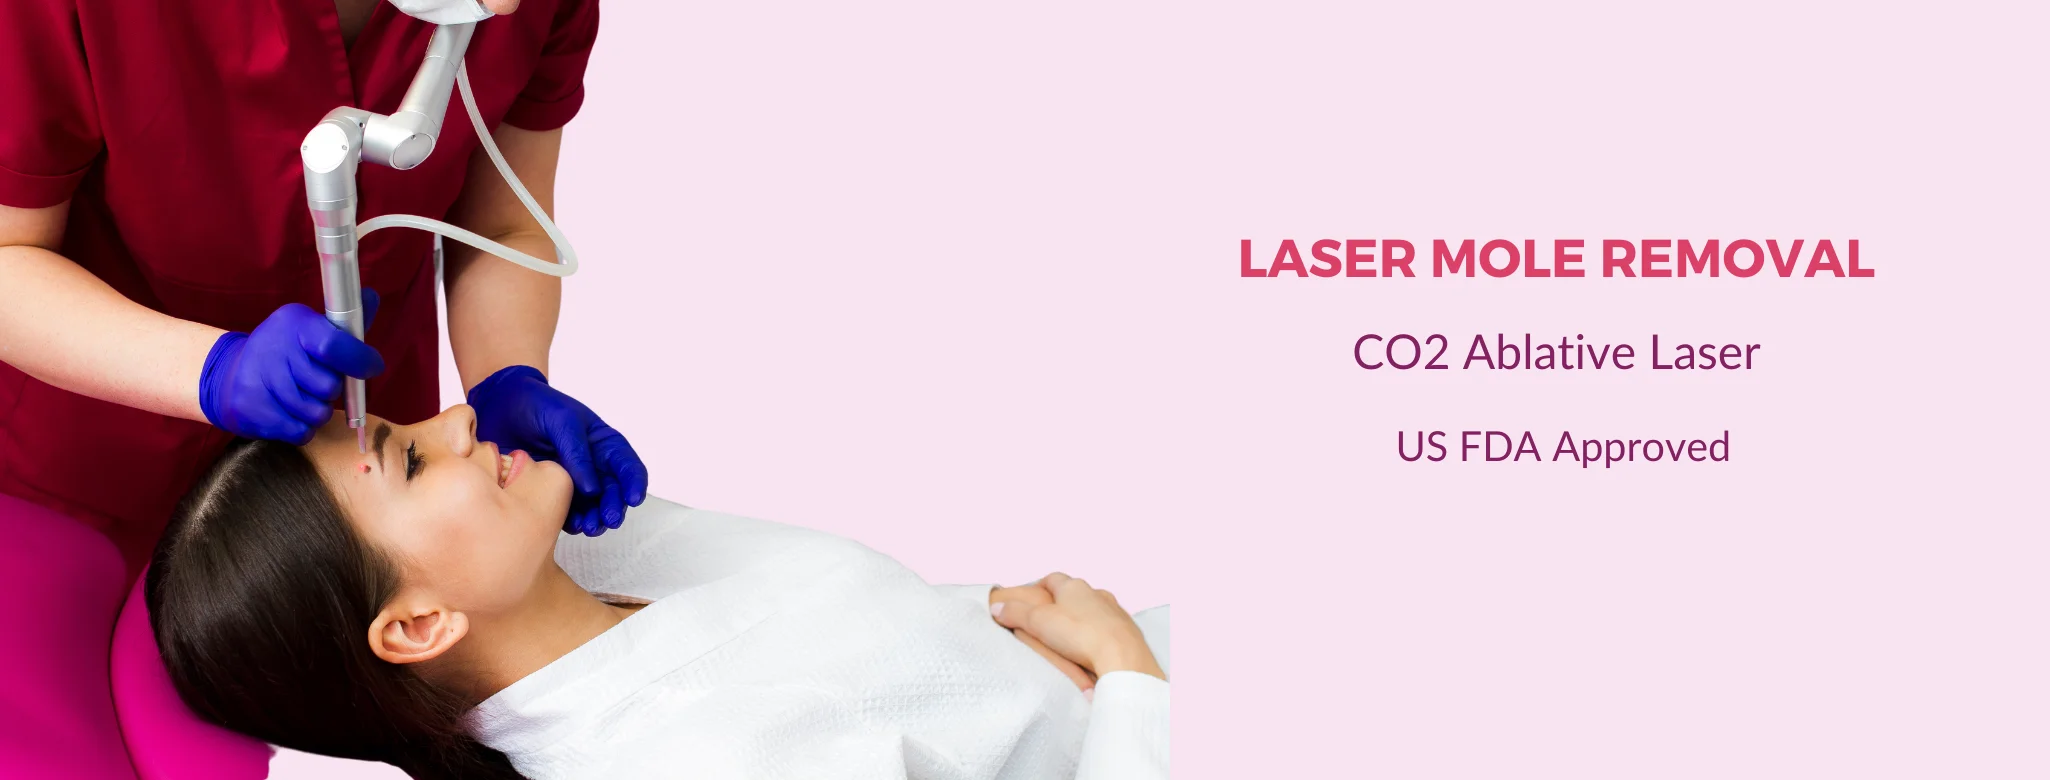 laser mole removal in delhi